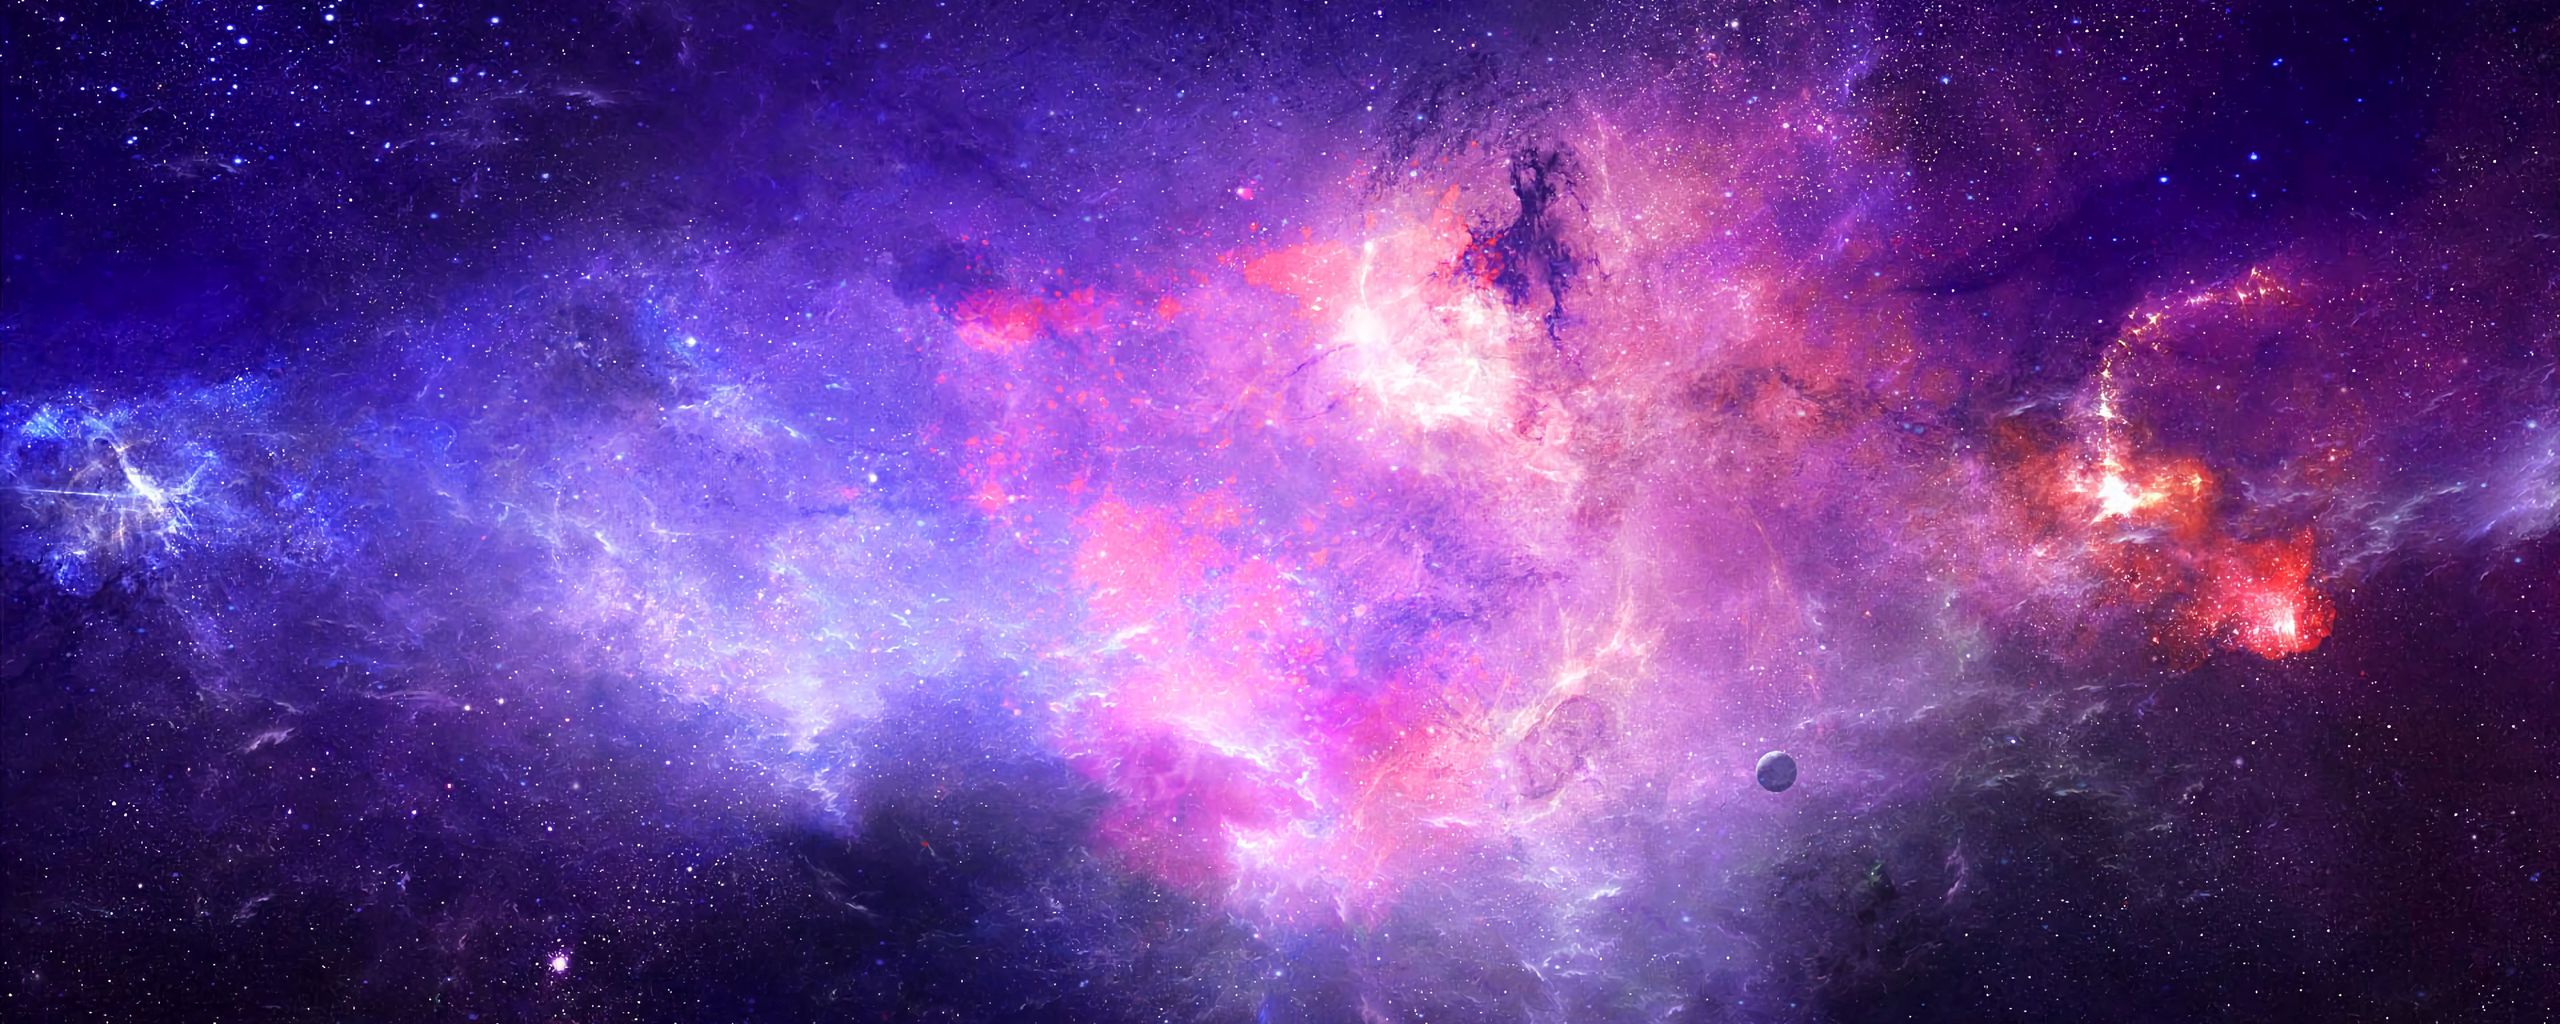 Download wallpaper 2560x1024 nebula, galaxy, light, glow, space ultrawide monitor HD background